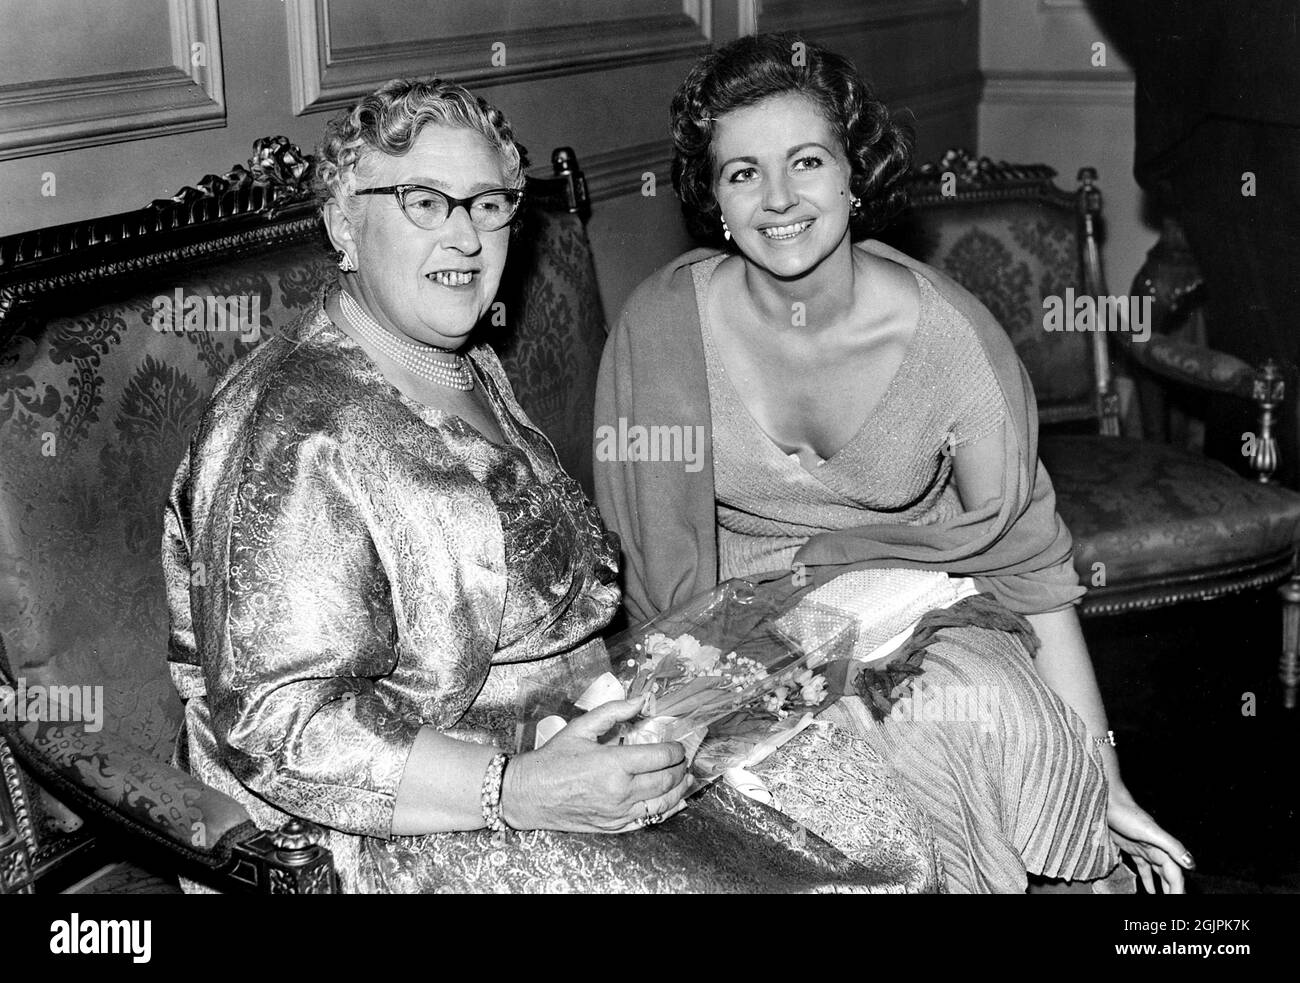 Die englische Krimiautorin Agatha Christie mit der Schauspielerin Margaret Lockwood am ersten Abend des Theaterstücks 'Towards Zero', 1956 / Aktenzeichen # 34145-434THA Stockfoto